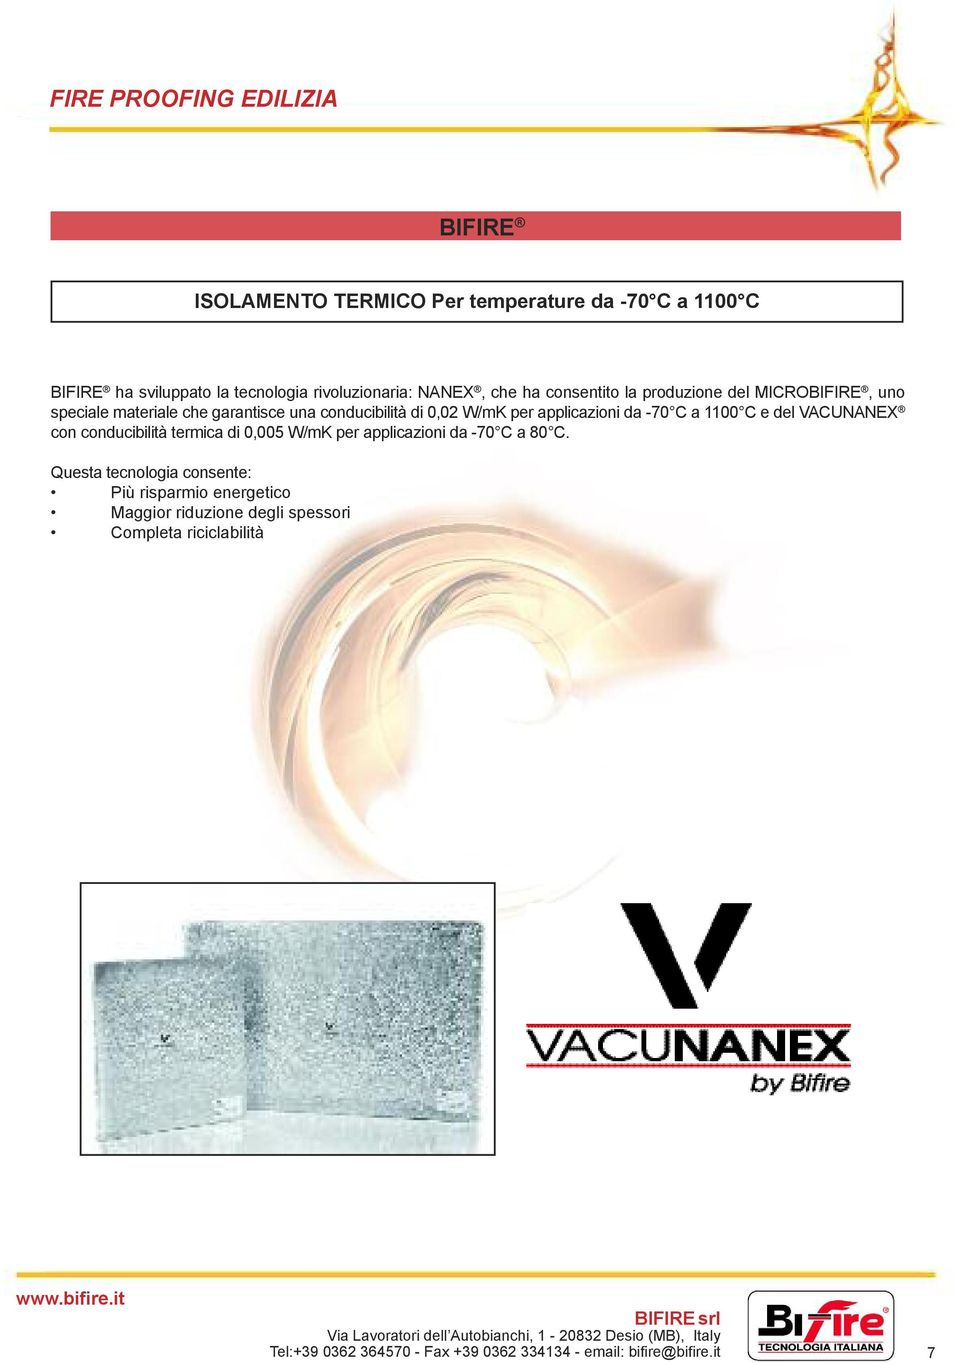 per applicazioni da -70 C a 1100 C e del VACUNANEX con conducibilità termica di 0,005 W/mK per applicazioni da -70 C